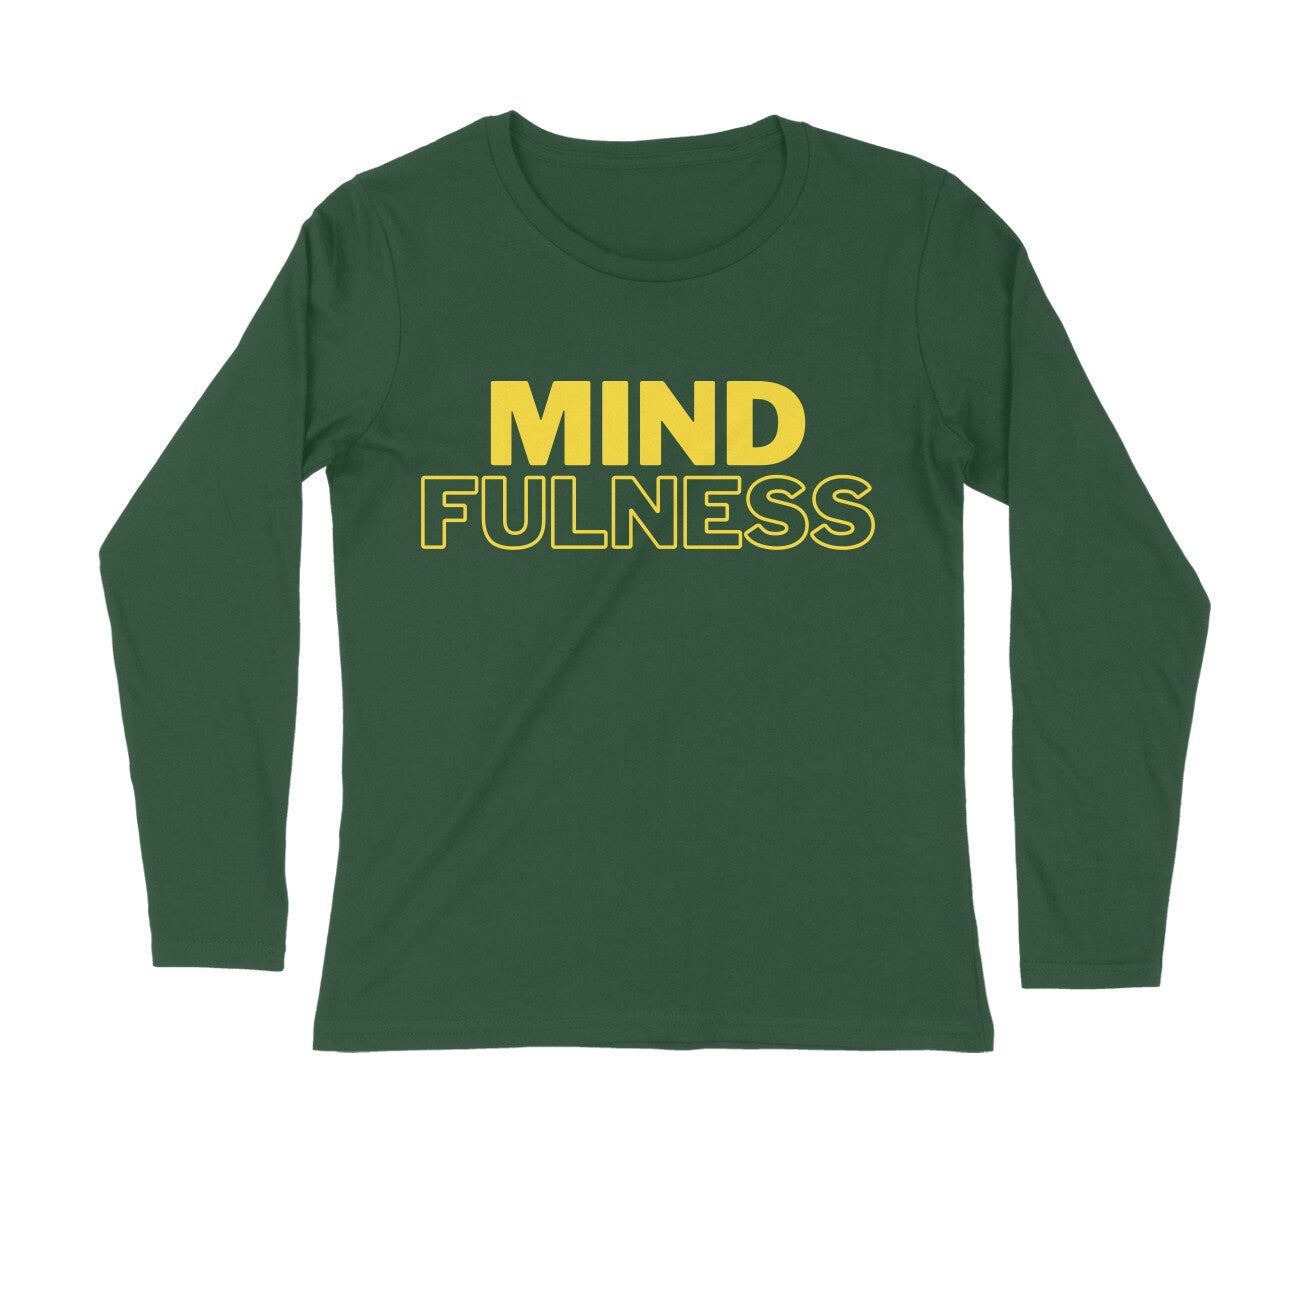 Mindfulness - Long Sleeve Unisex Tshirt